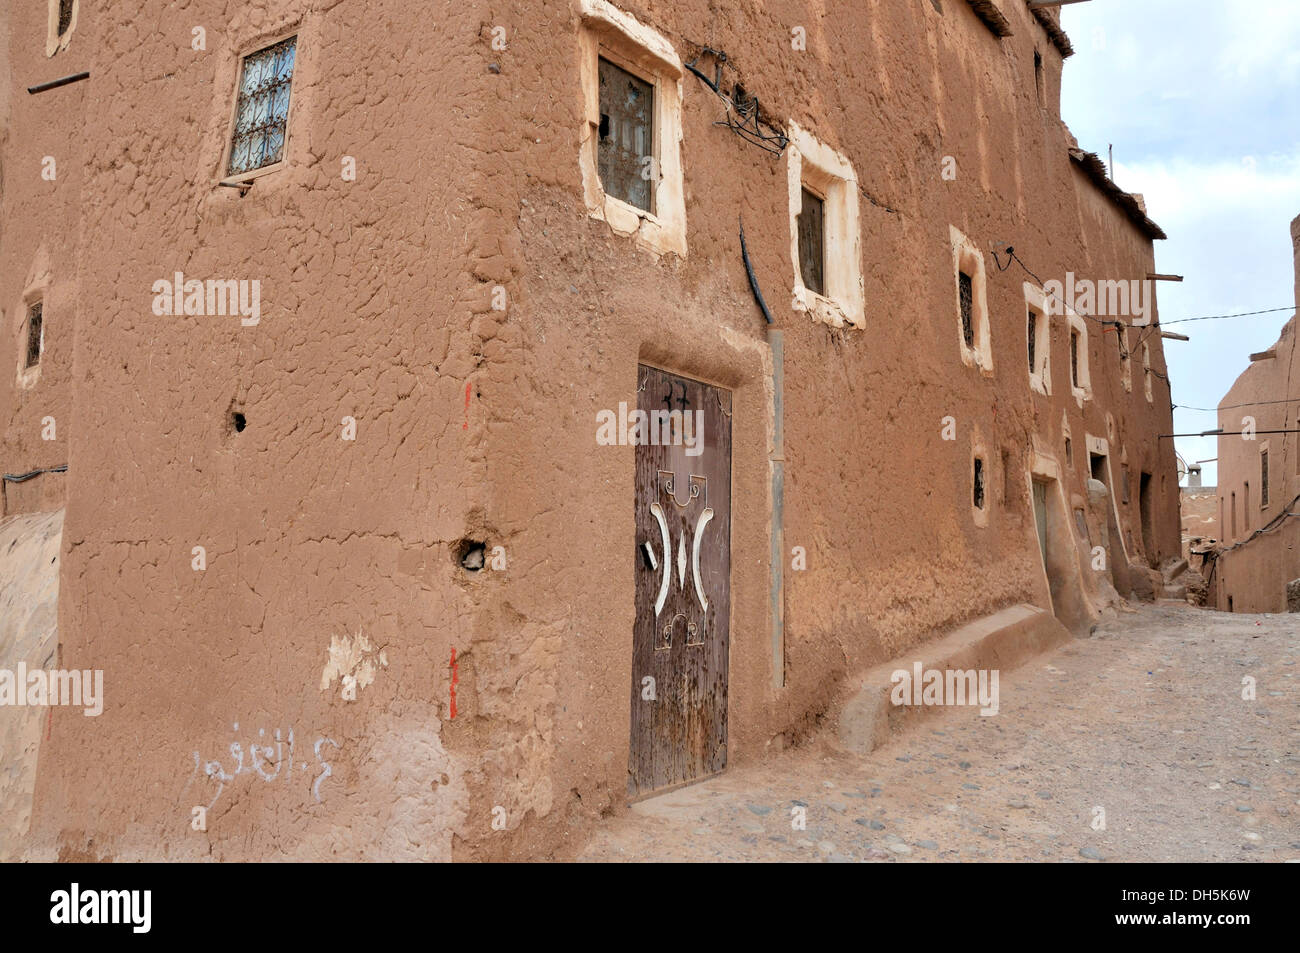 L'architecture de pisé de terre dans la vieille ville ou Médina, Ouarzazate, Maroc, Afrique Banque D'Images